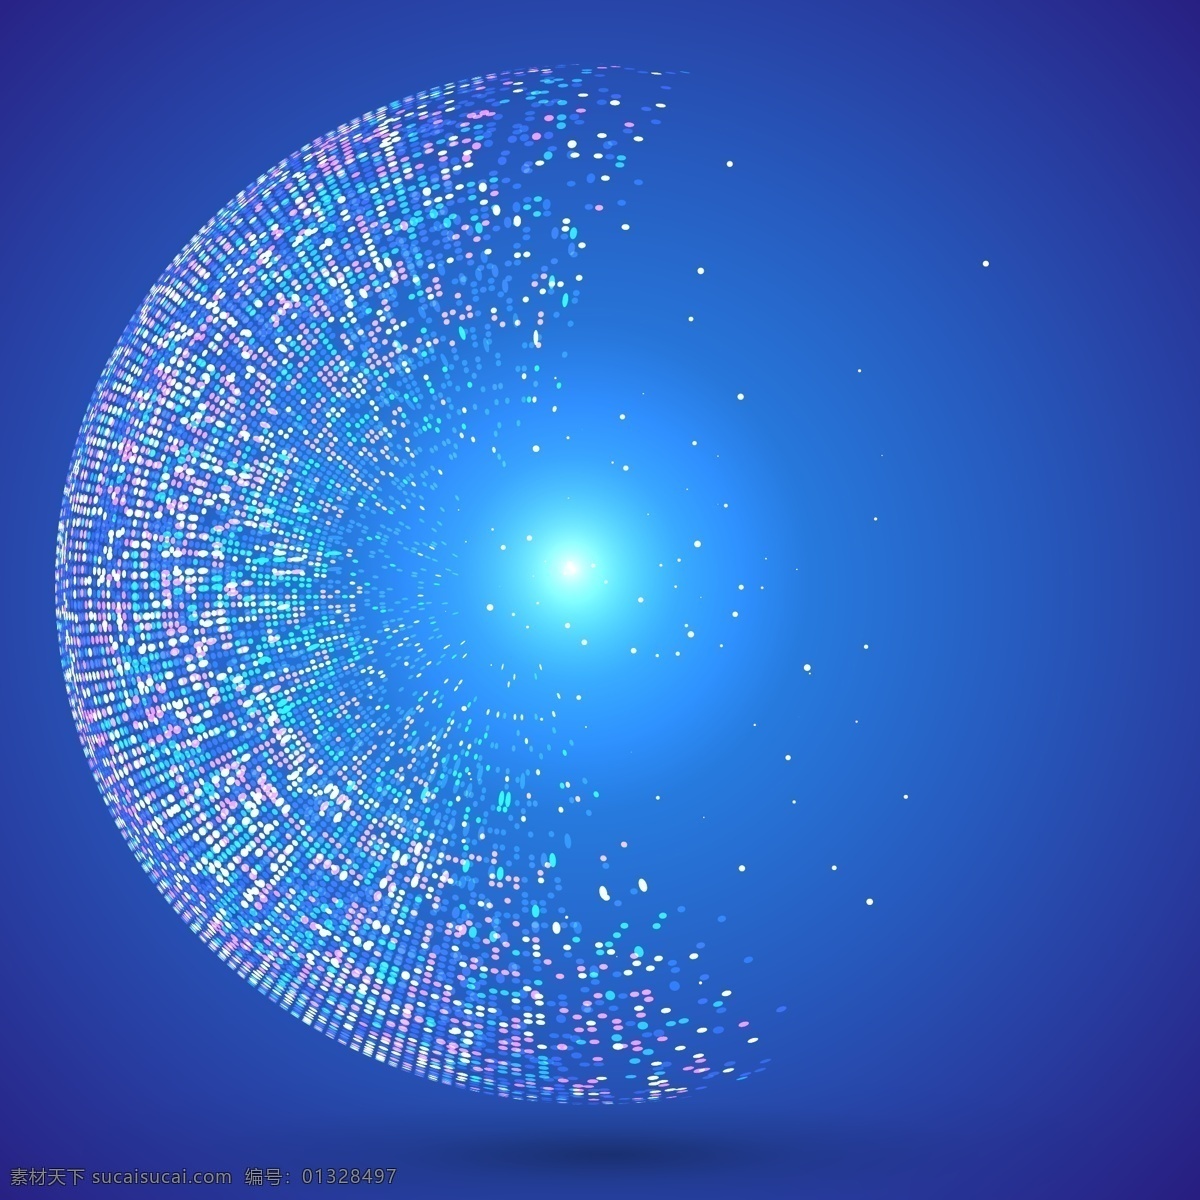 闪烁粒子背景 闪烁粒子 抽象地球 碎片 蓝色 科技 高端 蓝色背景 矢量素材